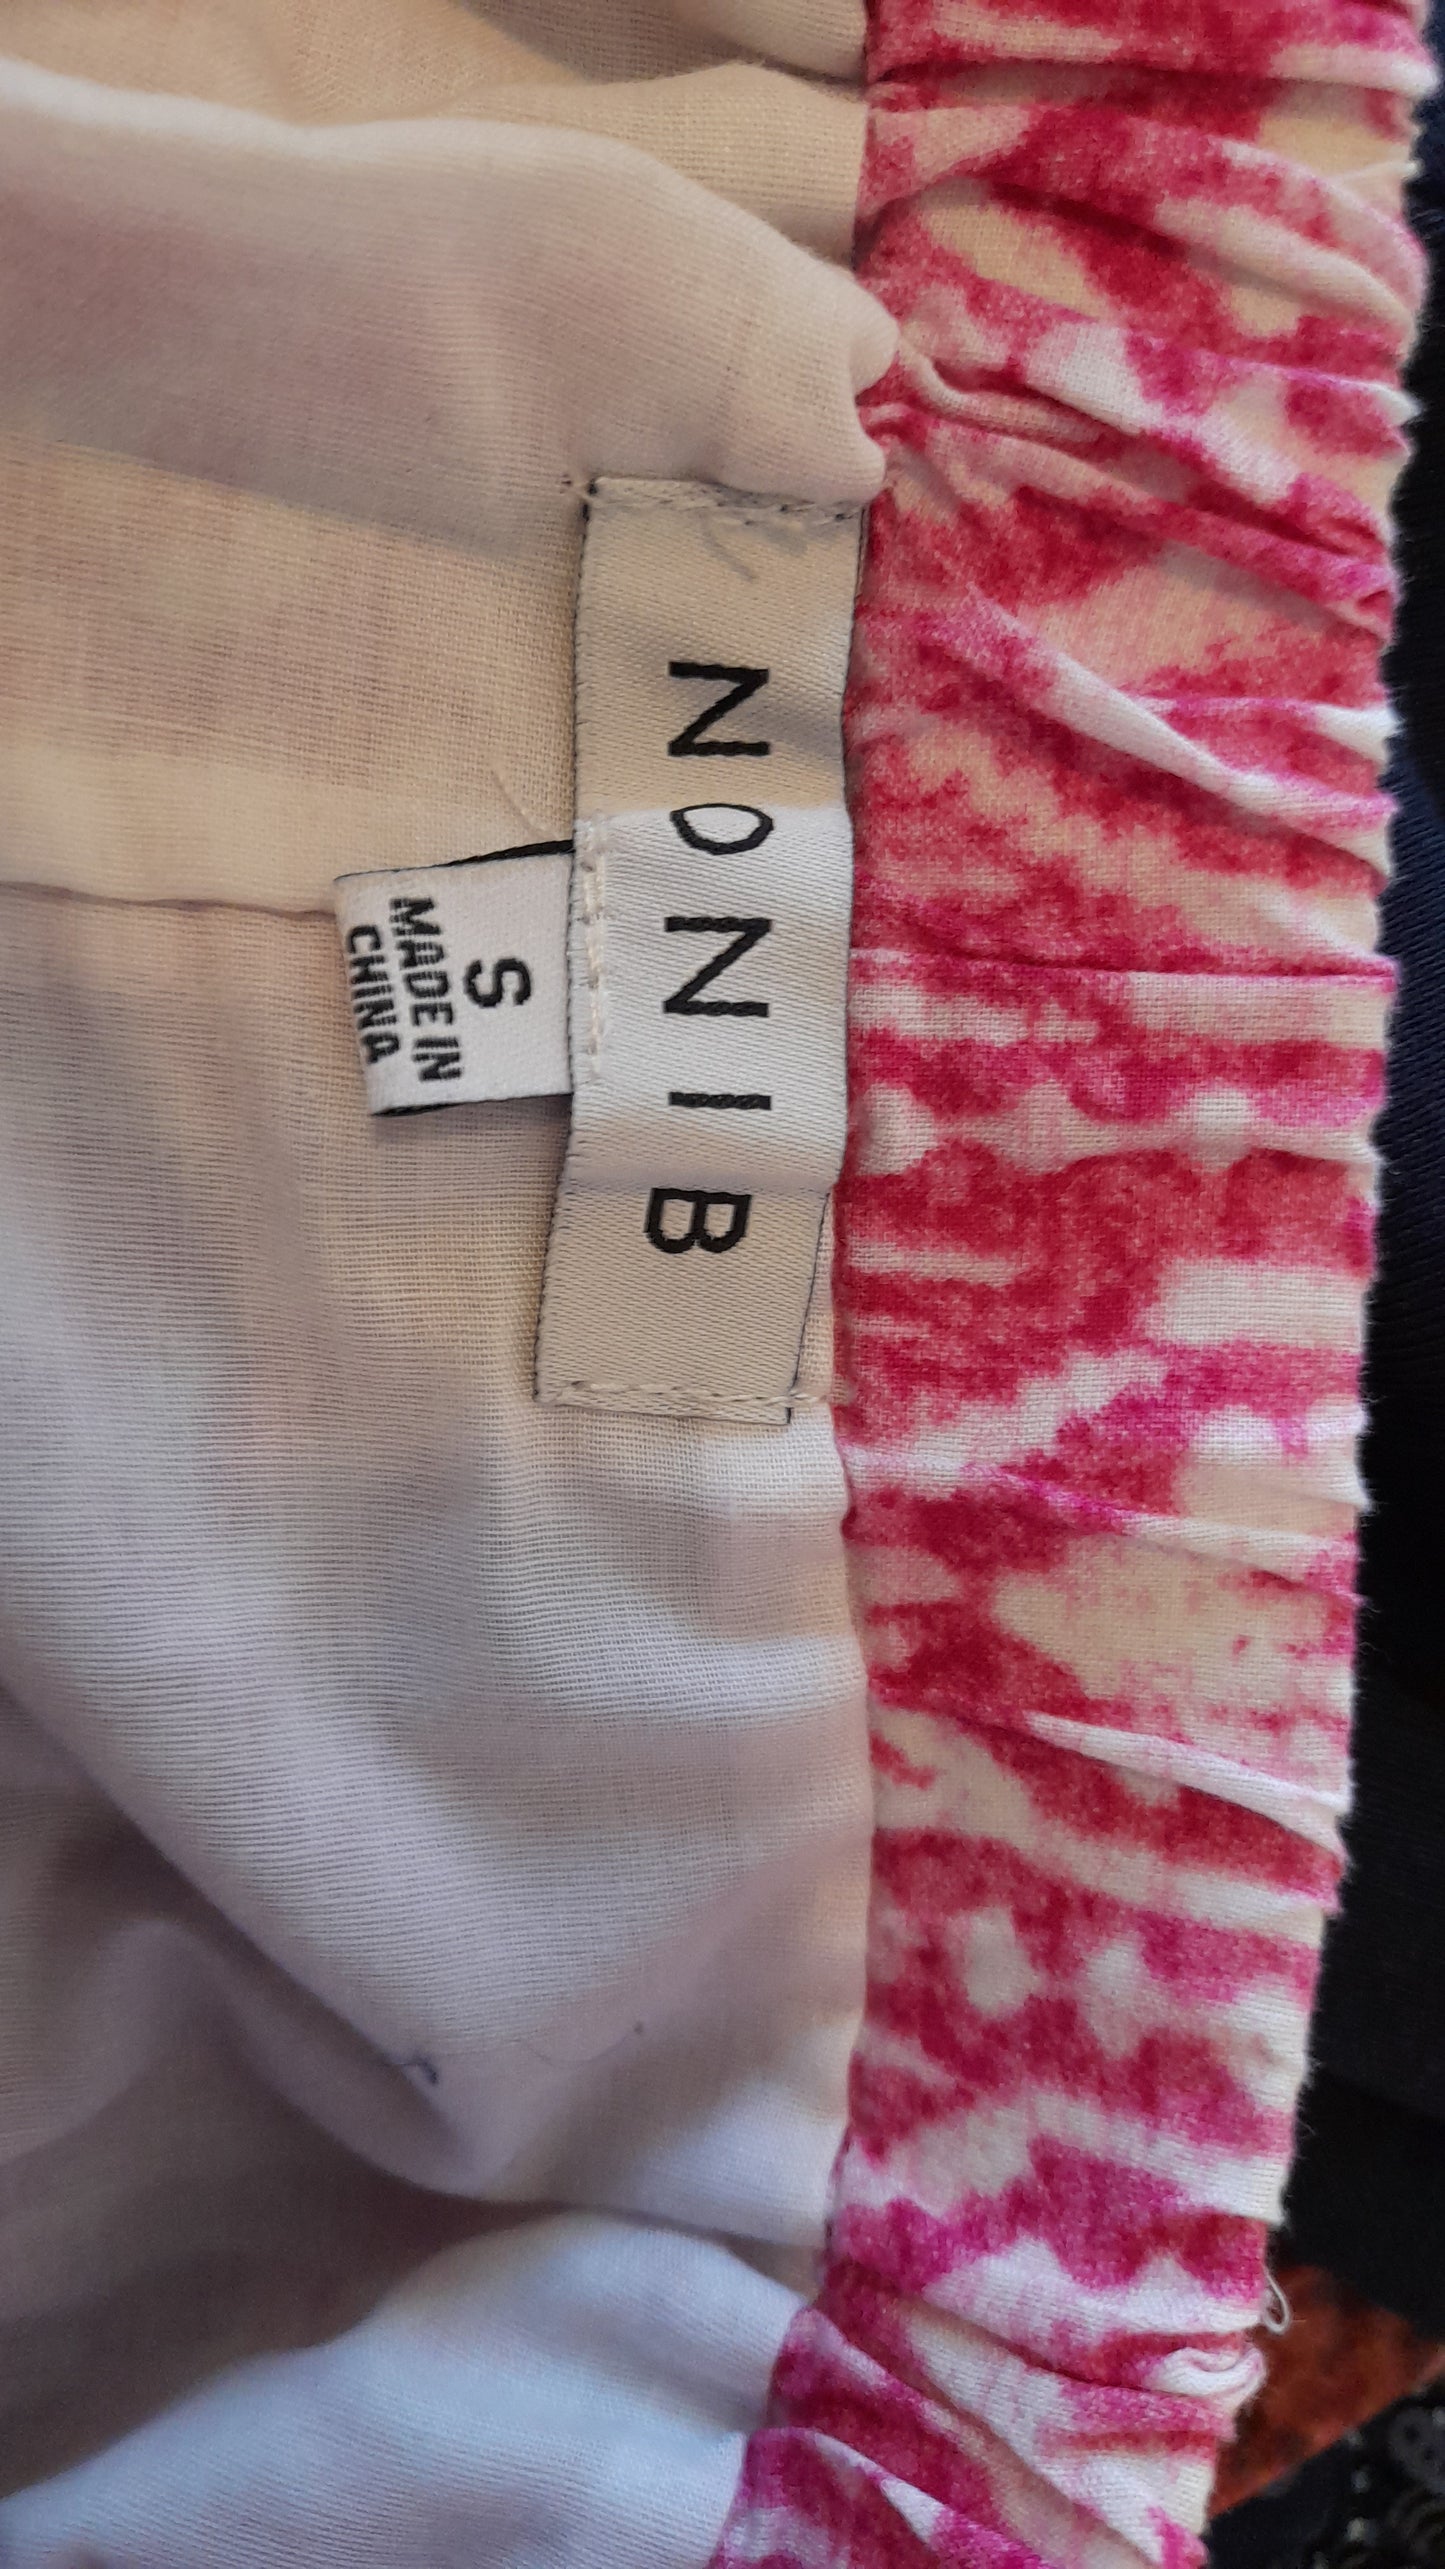 Skirt - Noni B Orange Pink & White Boho Size S/10